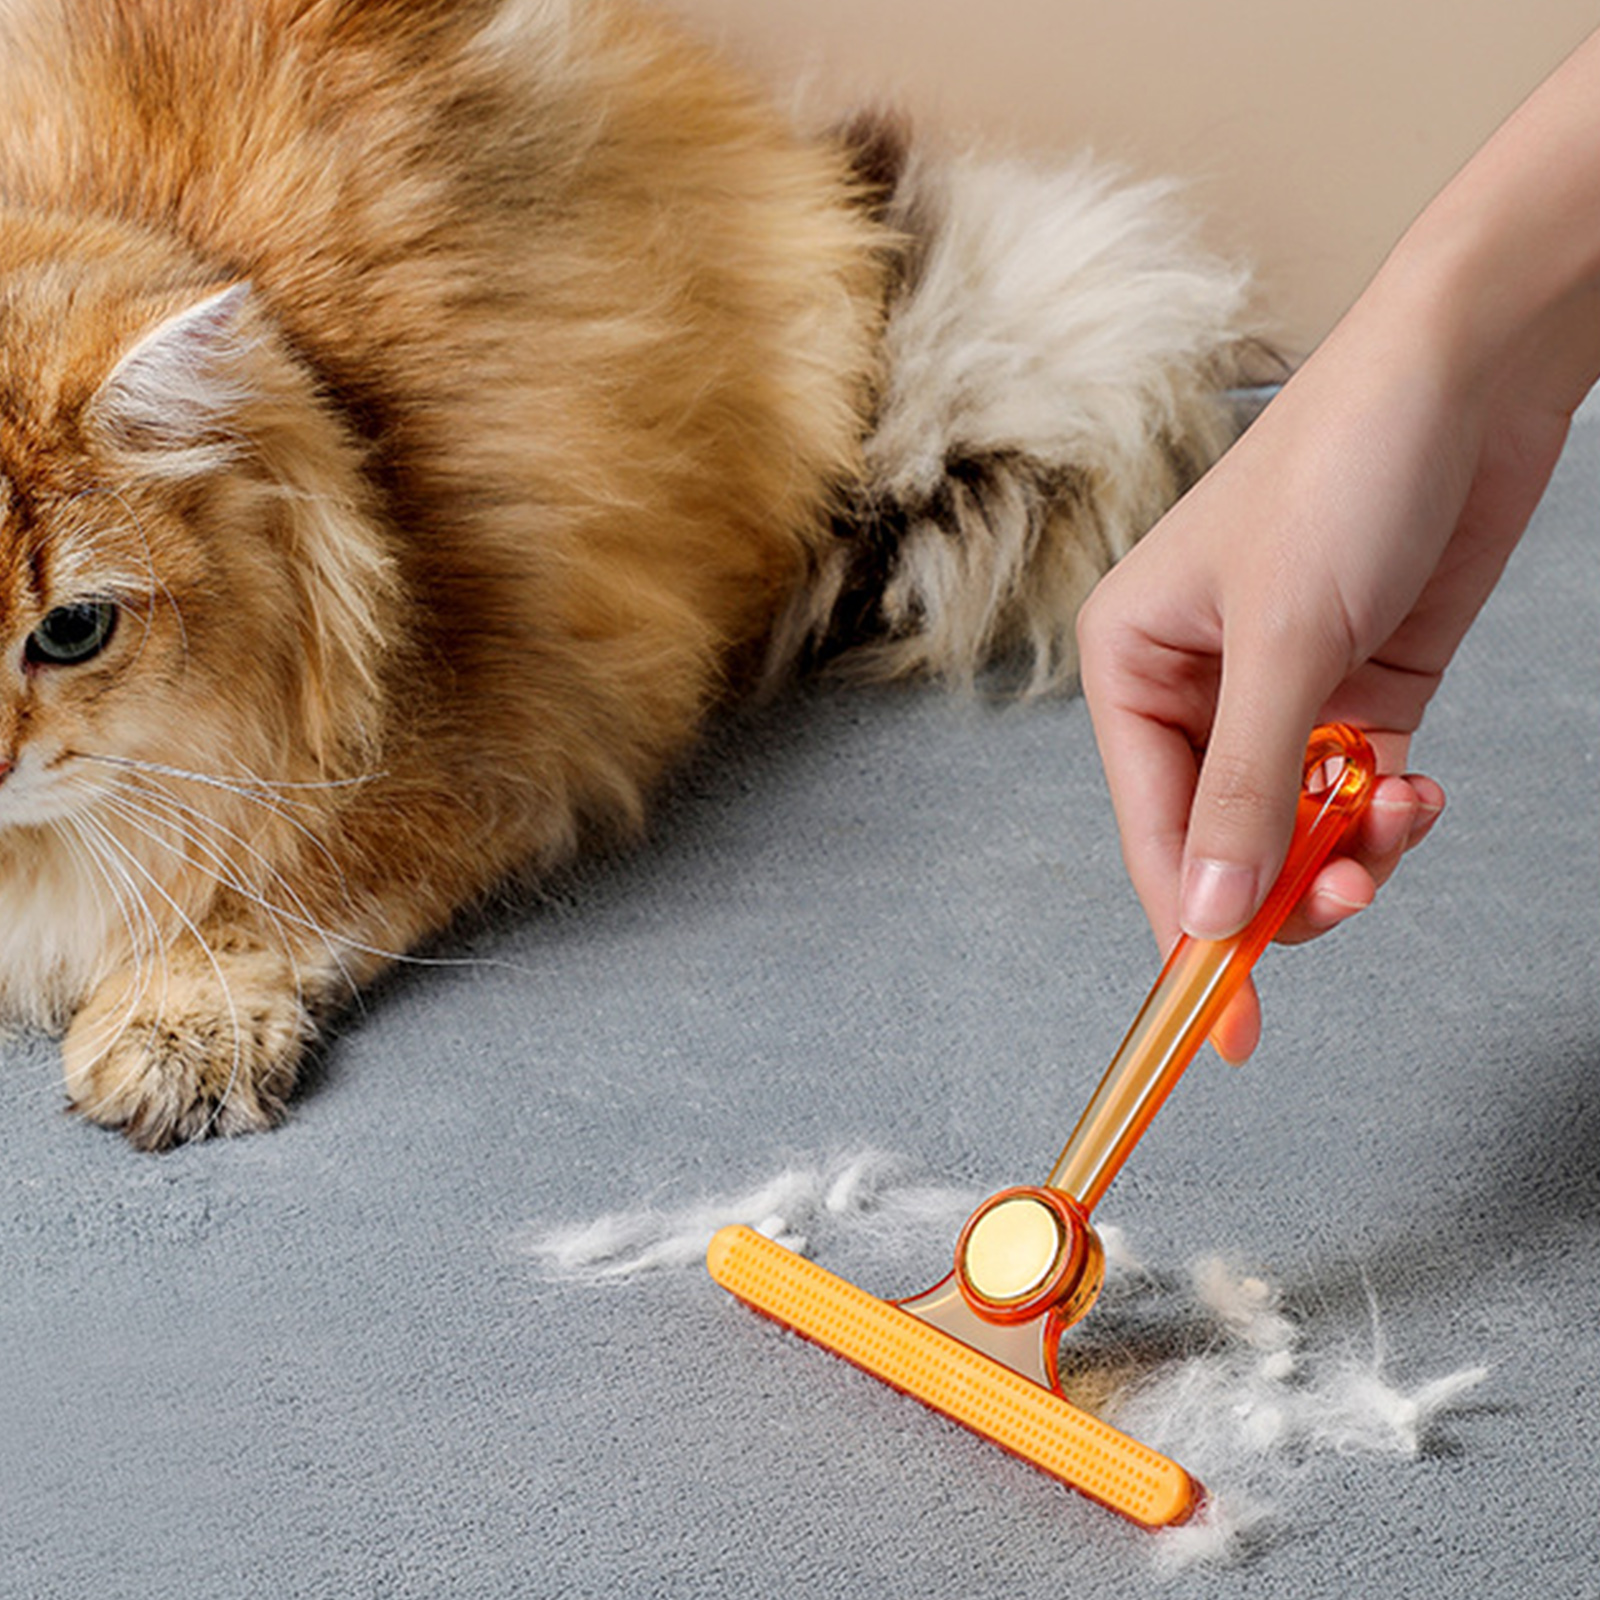 Personali cani da gatto cime rimodellati spazzole pulite vestiti capelli a doppia faccia a doppia facciale la pulizia della pulizia del raschietto in tessuto